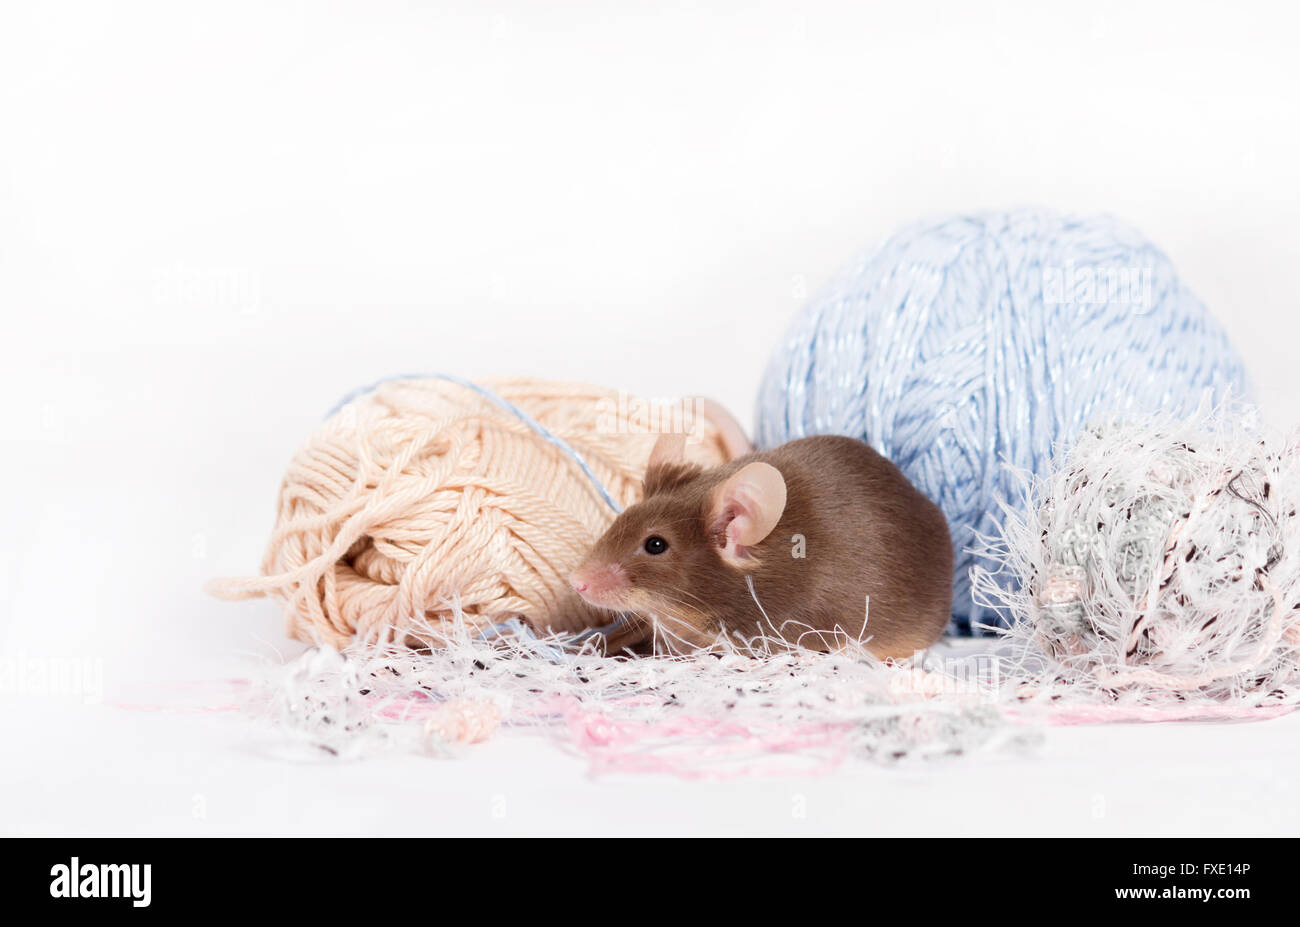 Lustige inländische Maus verbirgt sich unter den Verwicklungen des Garns. Garn ist blau, Beige, rosa und flauschig. Maus hat buschige Wiskers. Maus ist fu Stockfoto